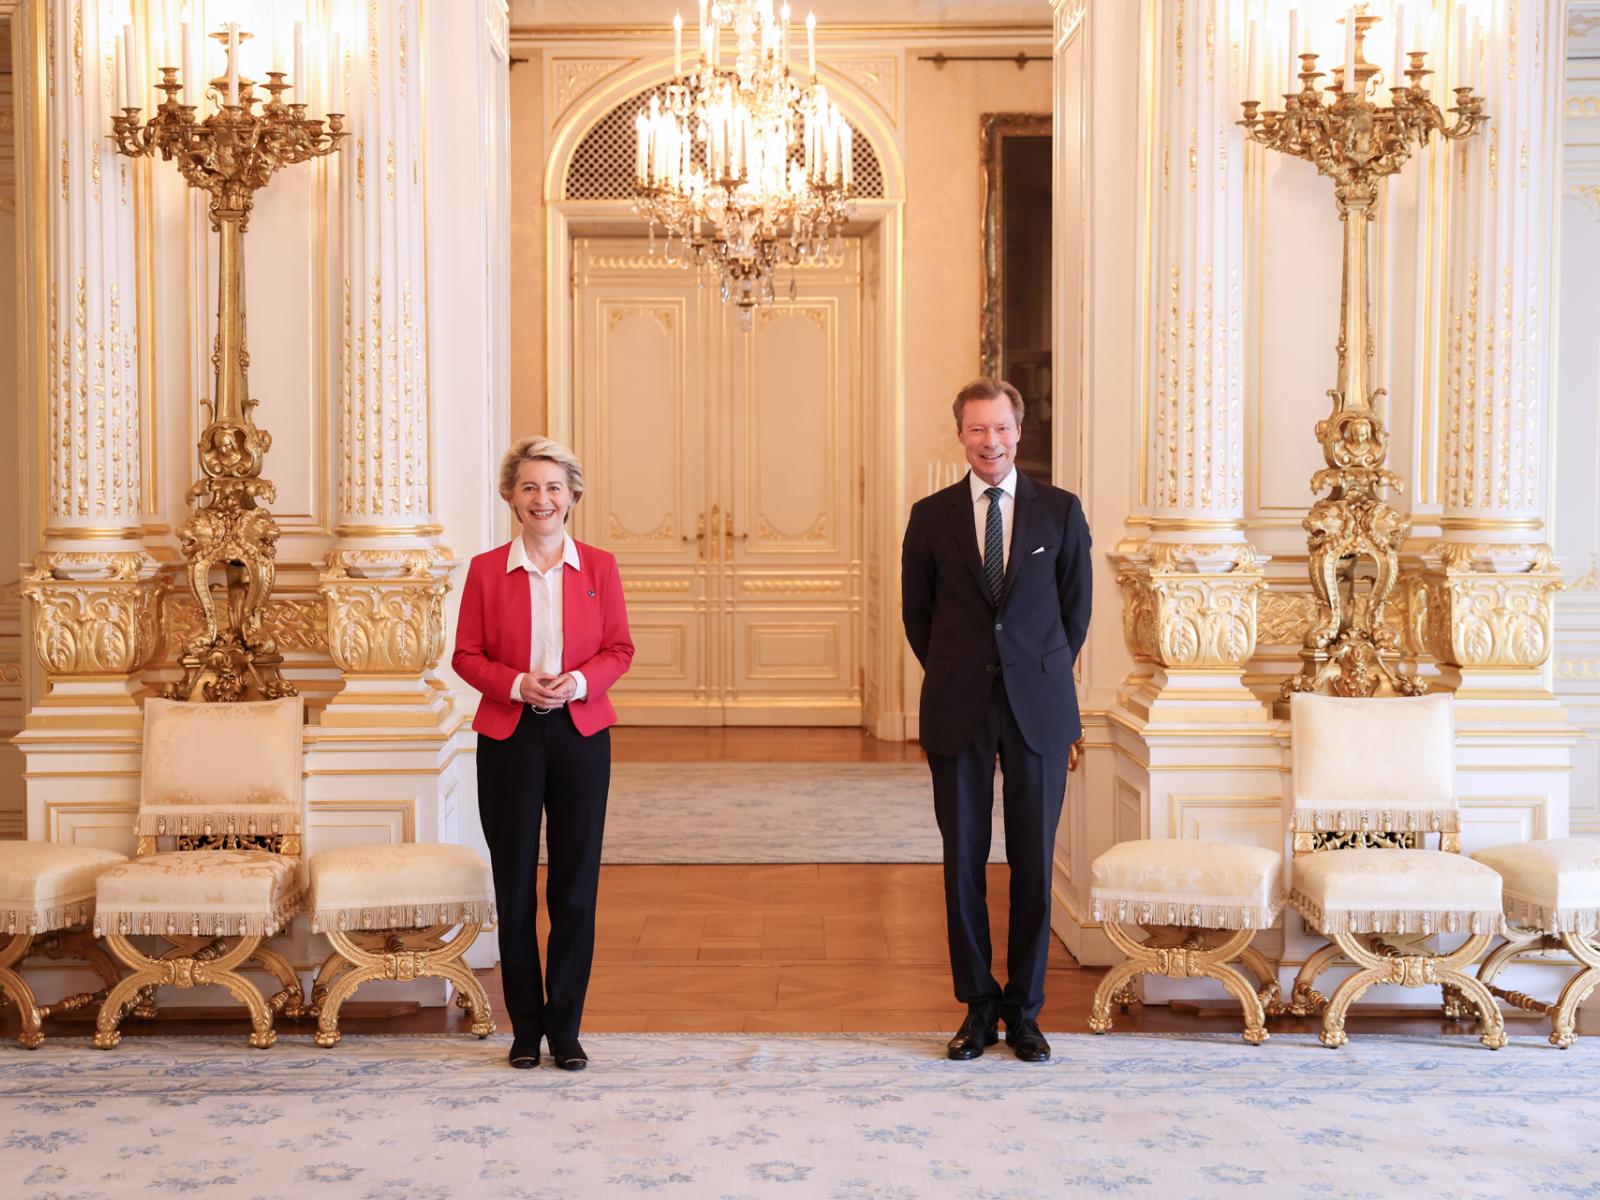 Le Grand-Duc et Madame von der Leyen pour la photo officielle dans la salle des fêtes